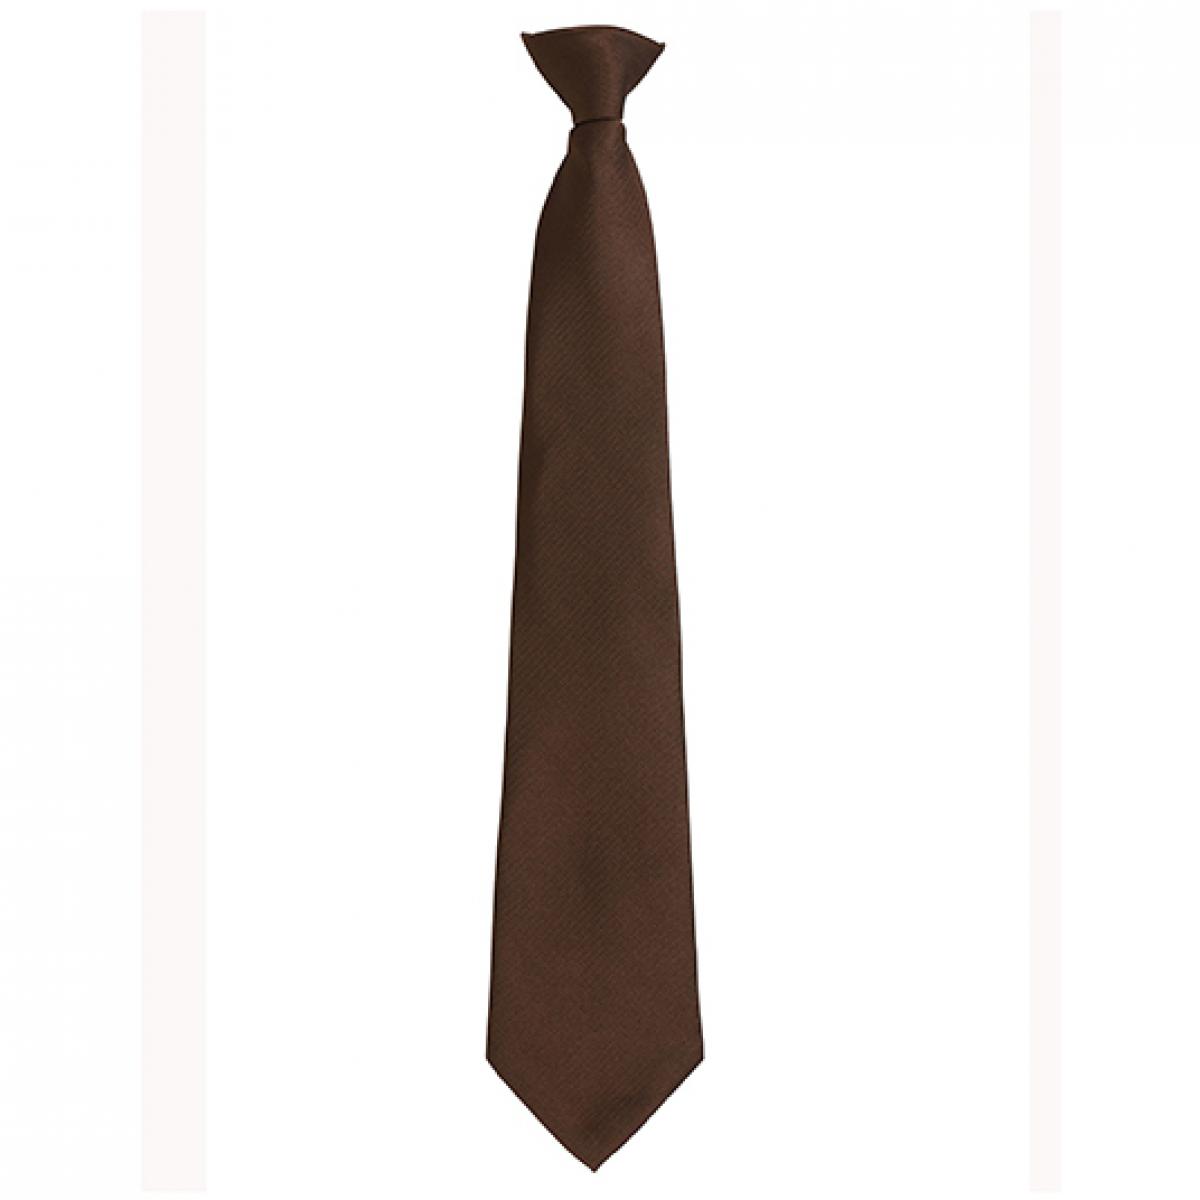 Hersteller: Premier Workwear Herstellernummer: PR785 Artikelbezeichnung: ´Colours´ Fashion Clip Tie Farbe: Brown (ca. Pantone 476)